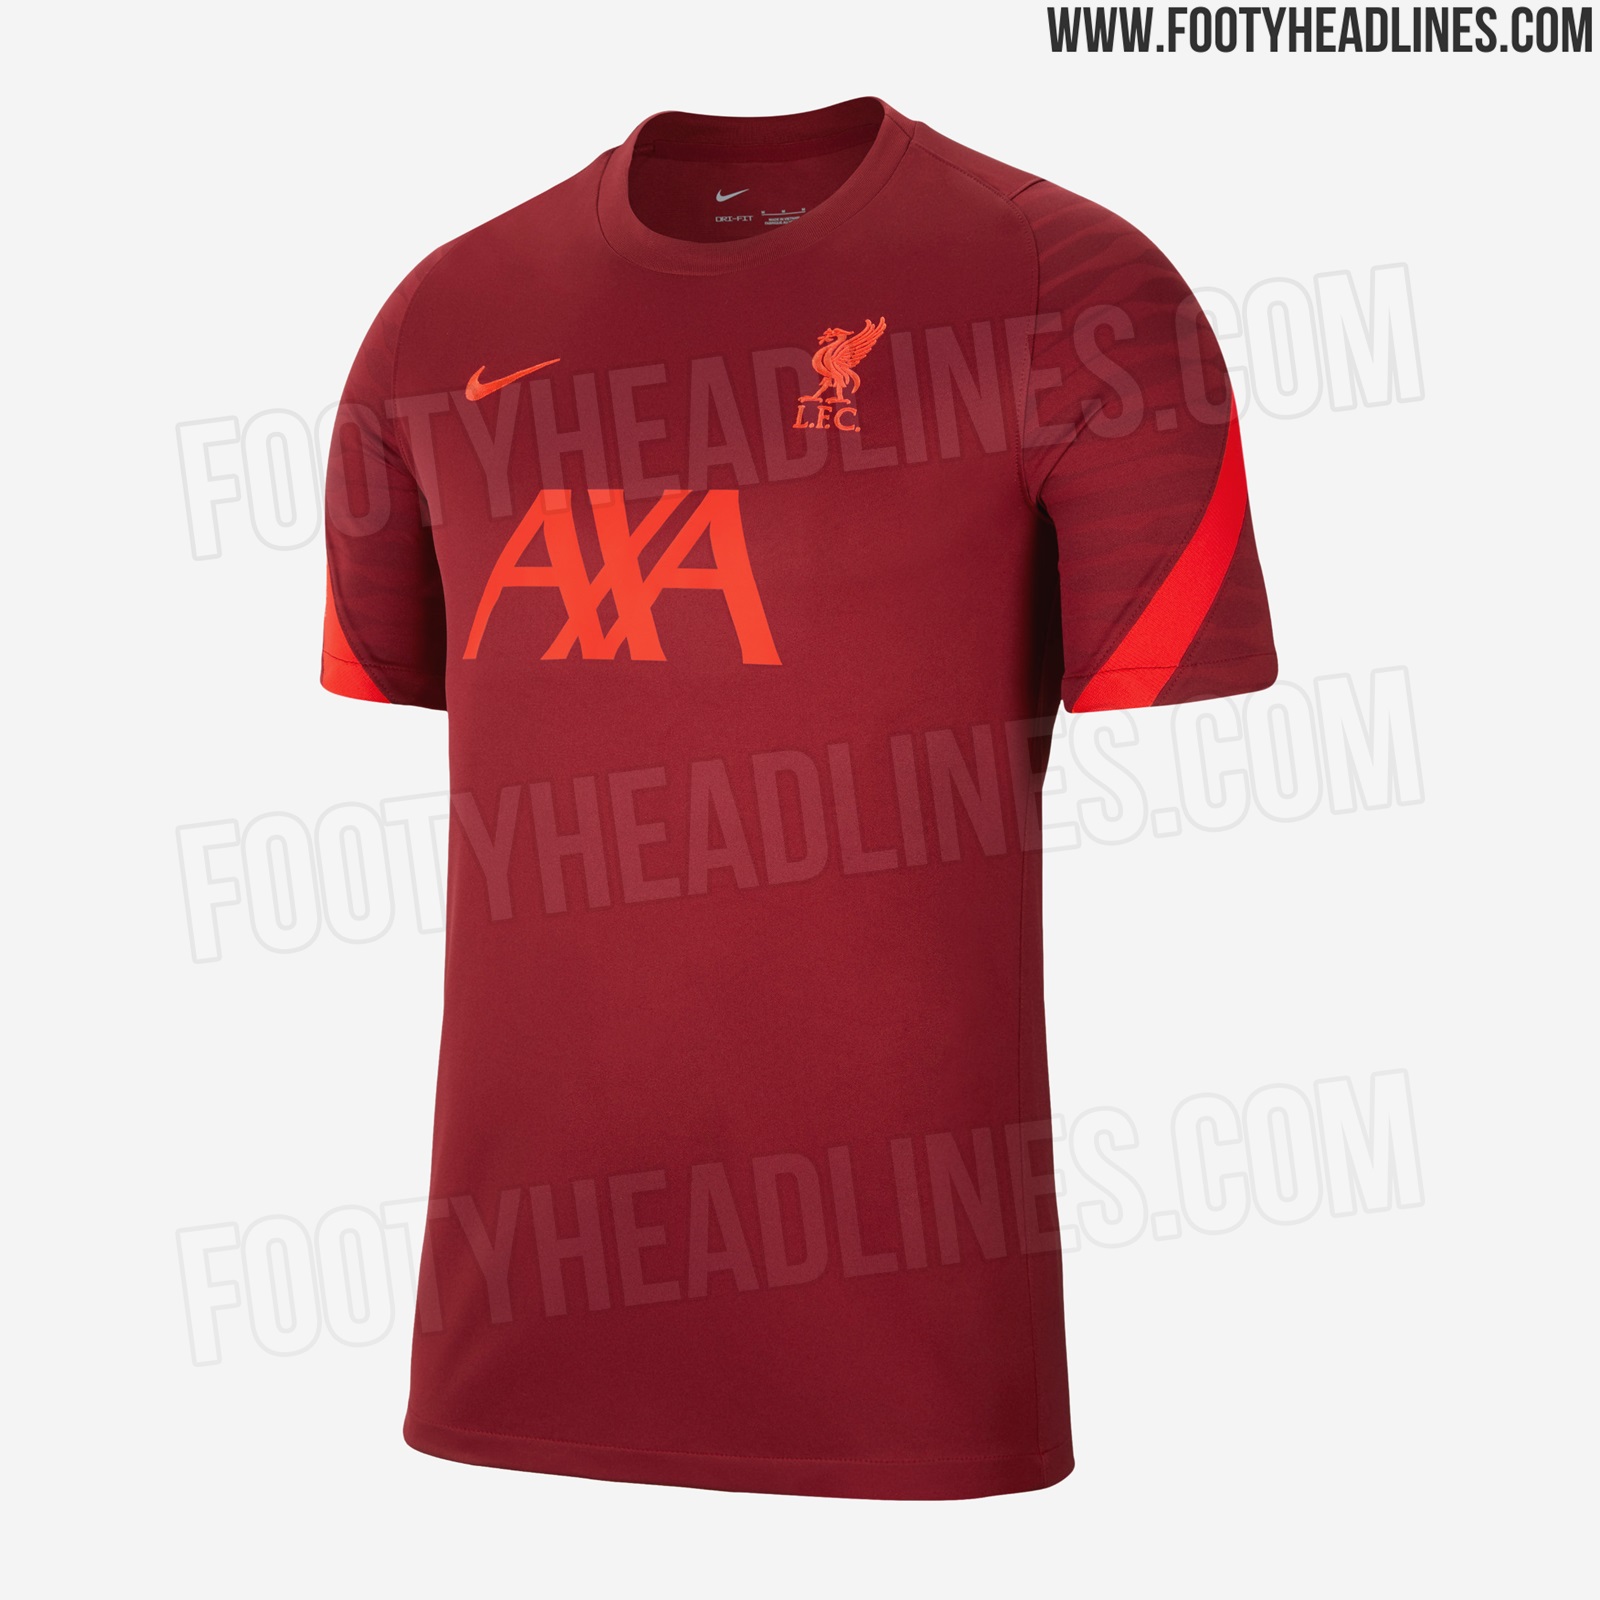 Nike Tottenham 2021-2022 Training Kit Leaked - Footy Headlines